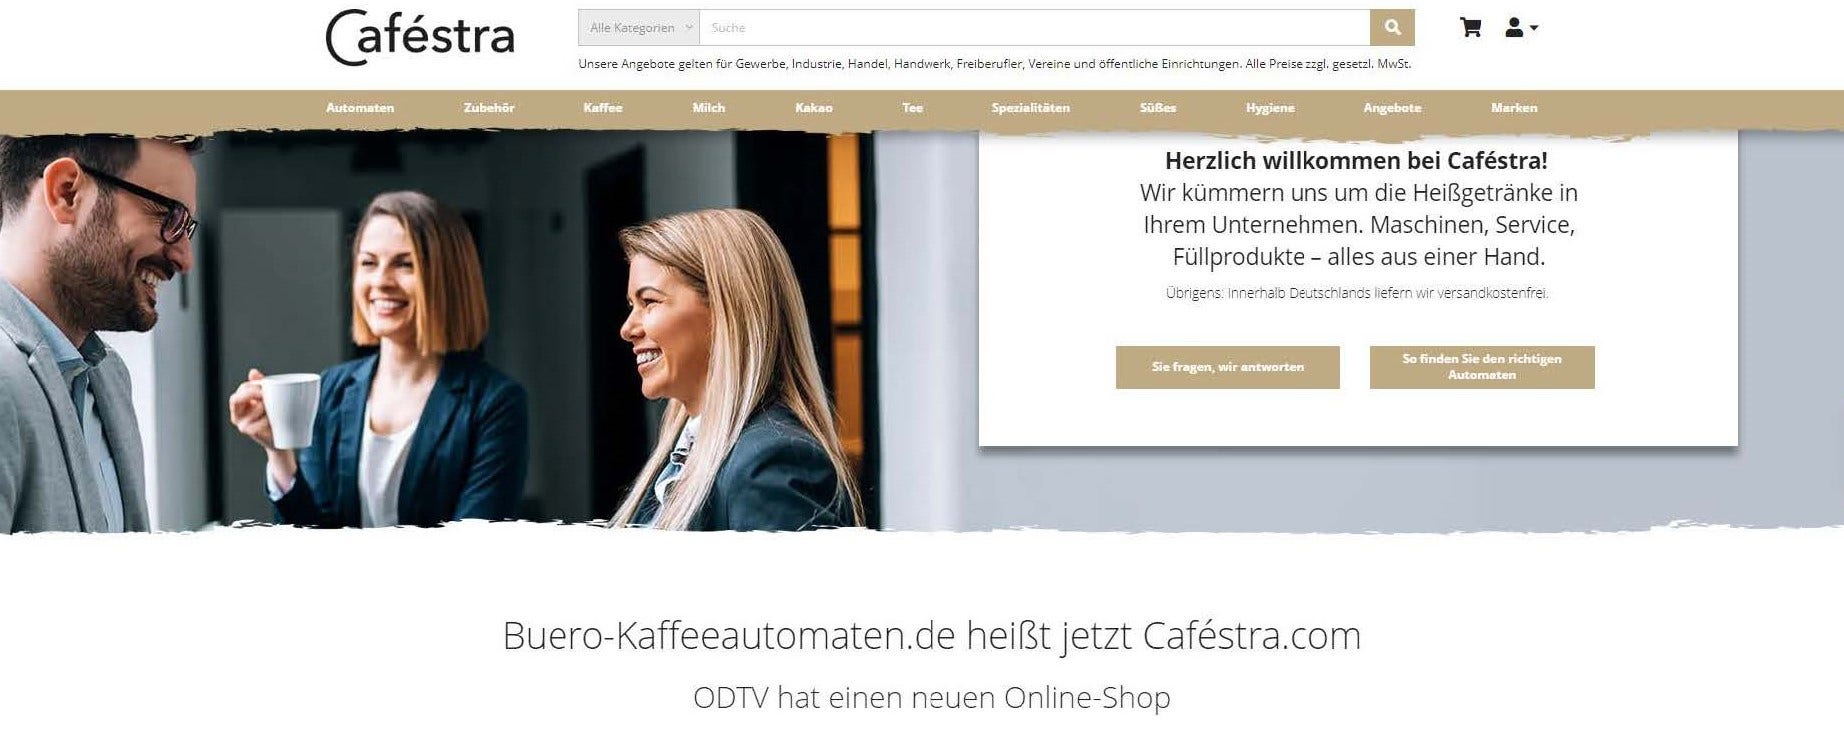 Herzlich willkommen bei Caféstra.com